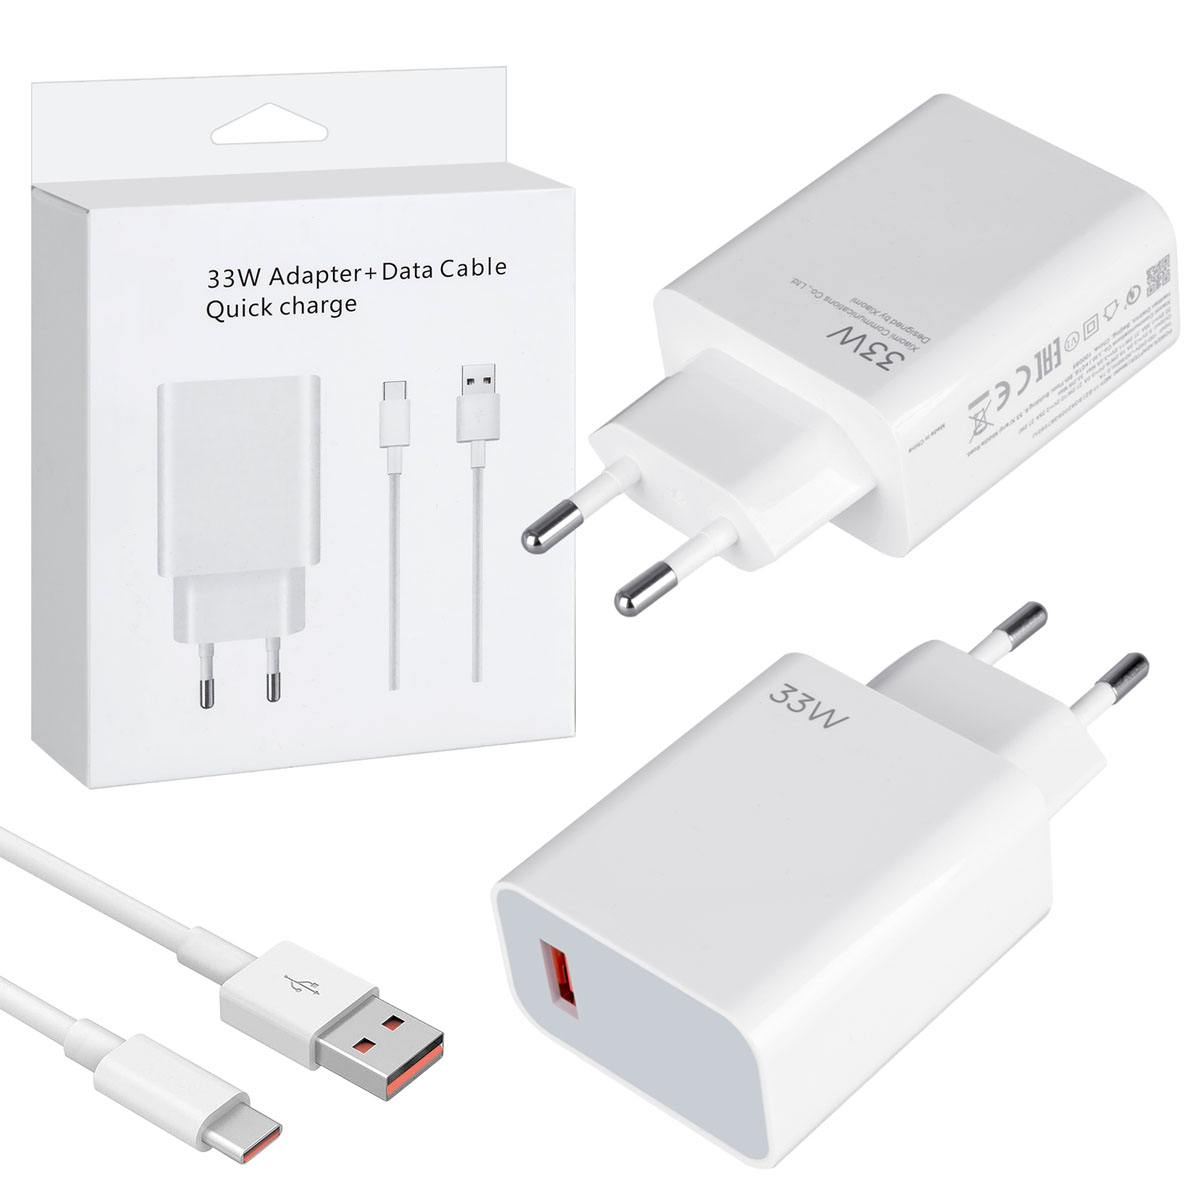 СЗУ (Сетевое зарядное устройство) MDY-11-EZ с кабелем USB Type C, 33W, 1 USB, длина 1 метр, цвет белый